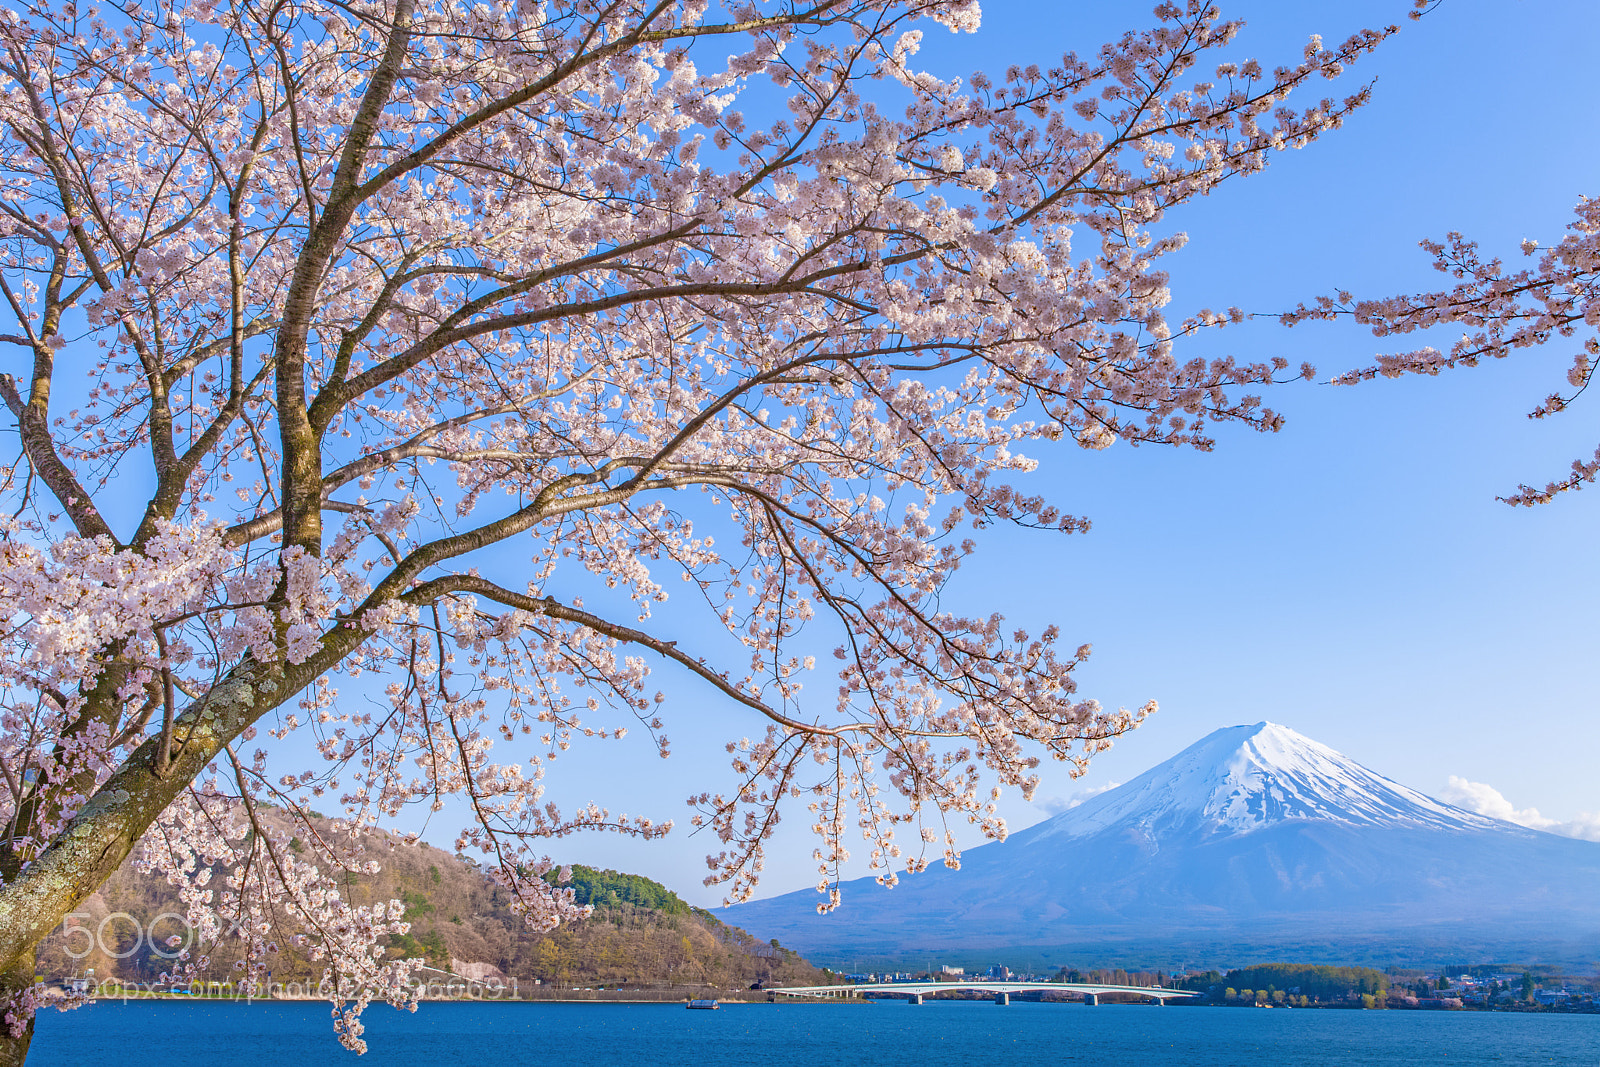 Canon EOS 5D Mark II sample photo. Sakura cherry blossom and photography